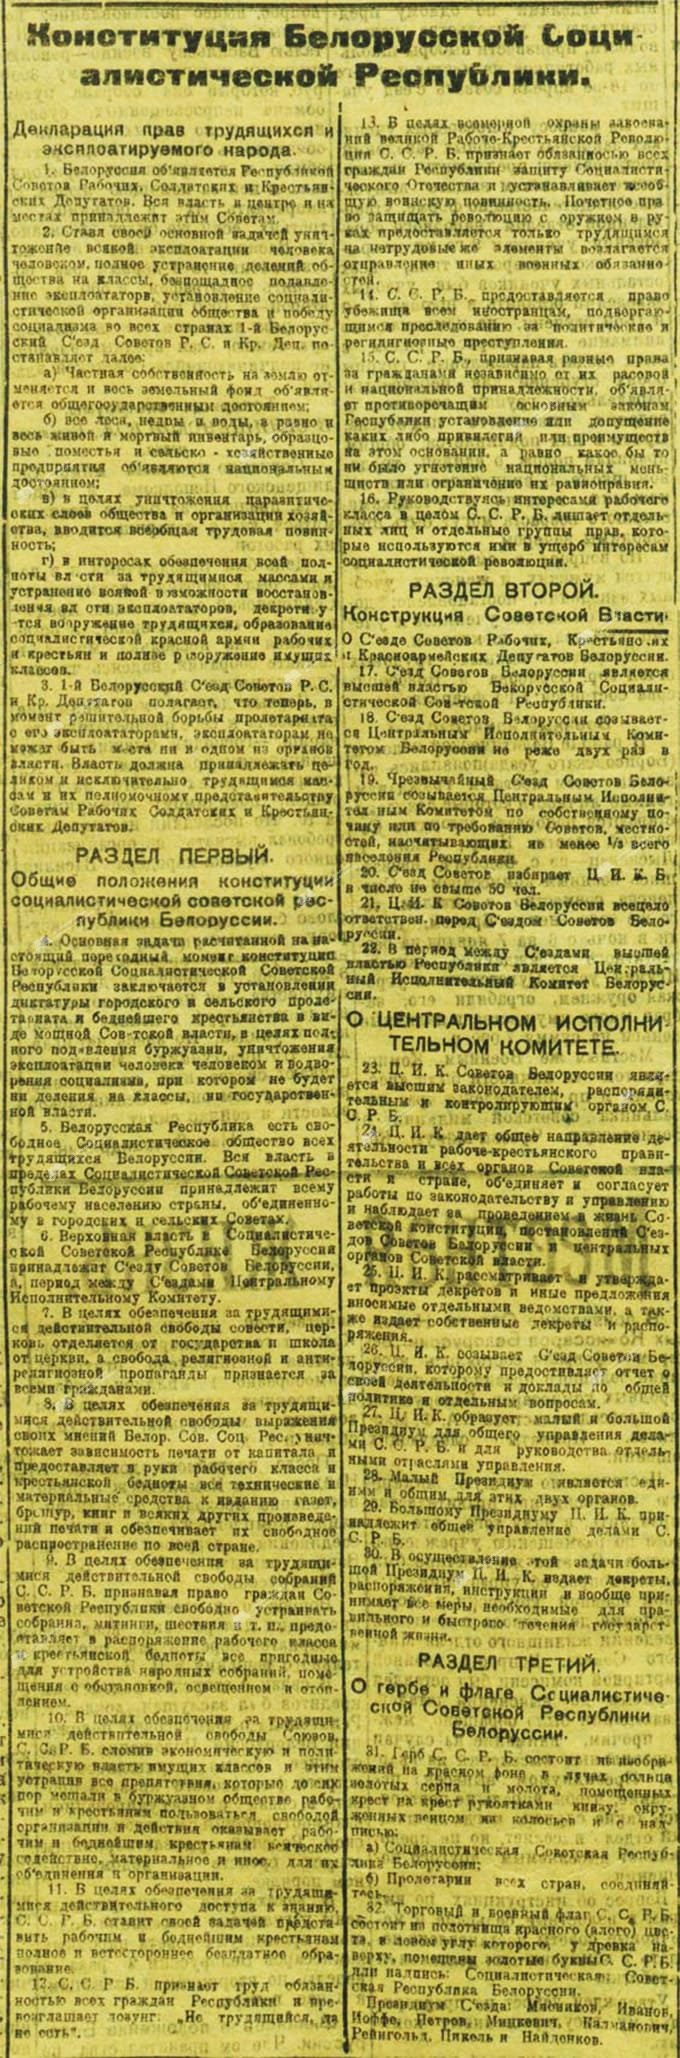 Verfassung der Weißrussischen Sozialistischen Republik (SSRB) vom 3. Februar 1919-с. 0